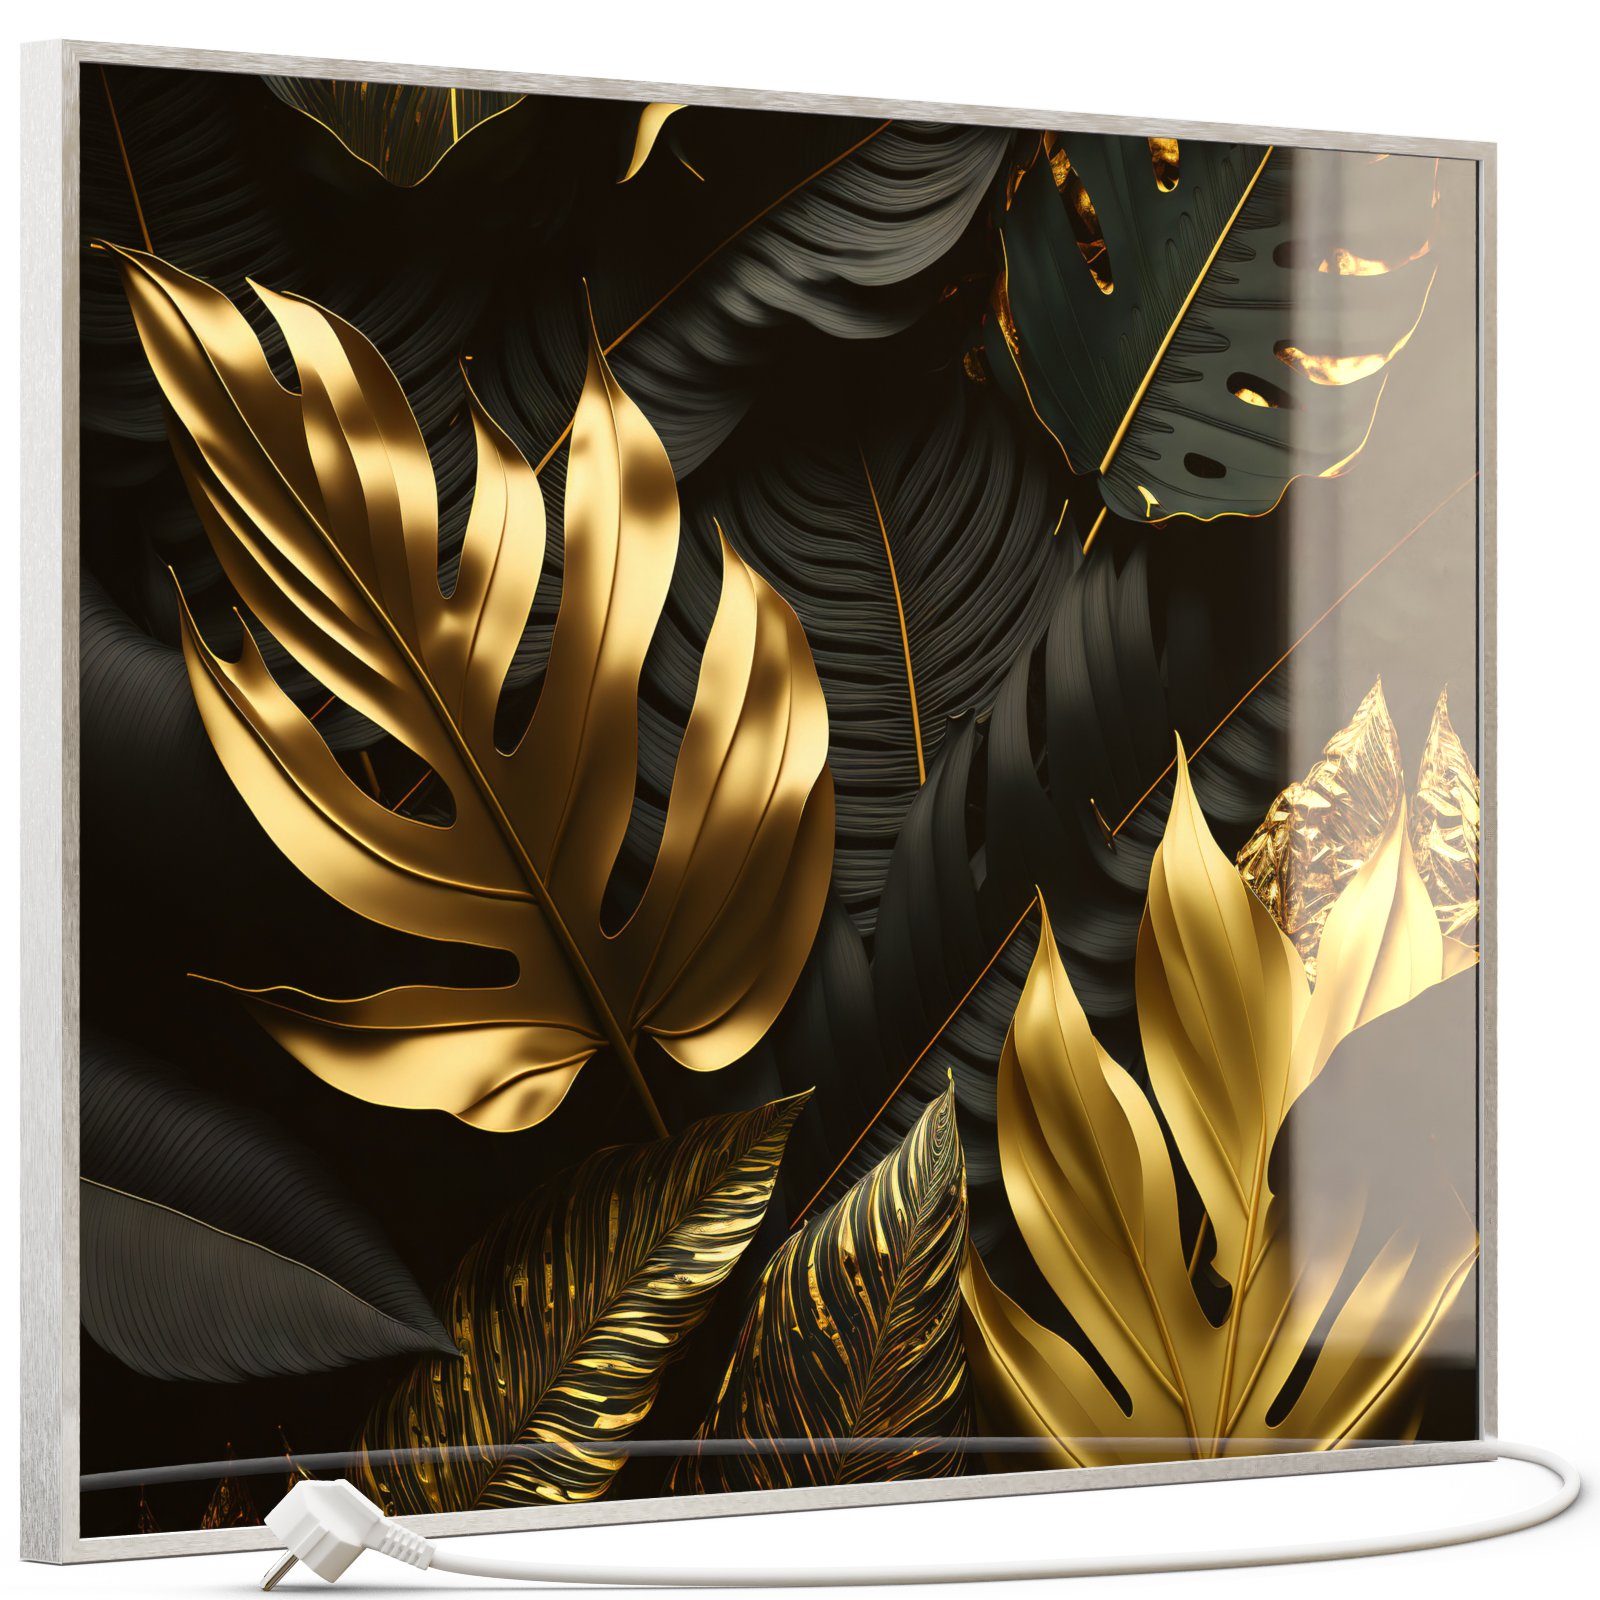 STEINFELD Heizsysteme Infrarotheizung, Glas Bild 350W-1200W, Inklusive Thermostat, 070 Goldenen Blättern Silber